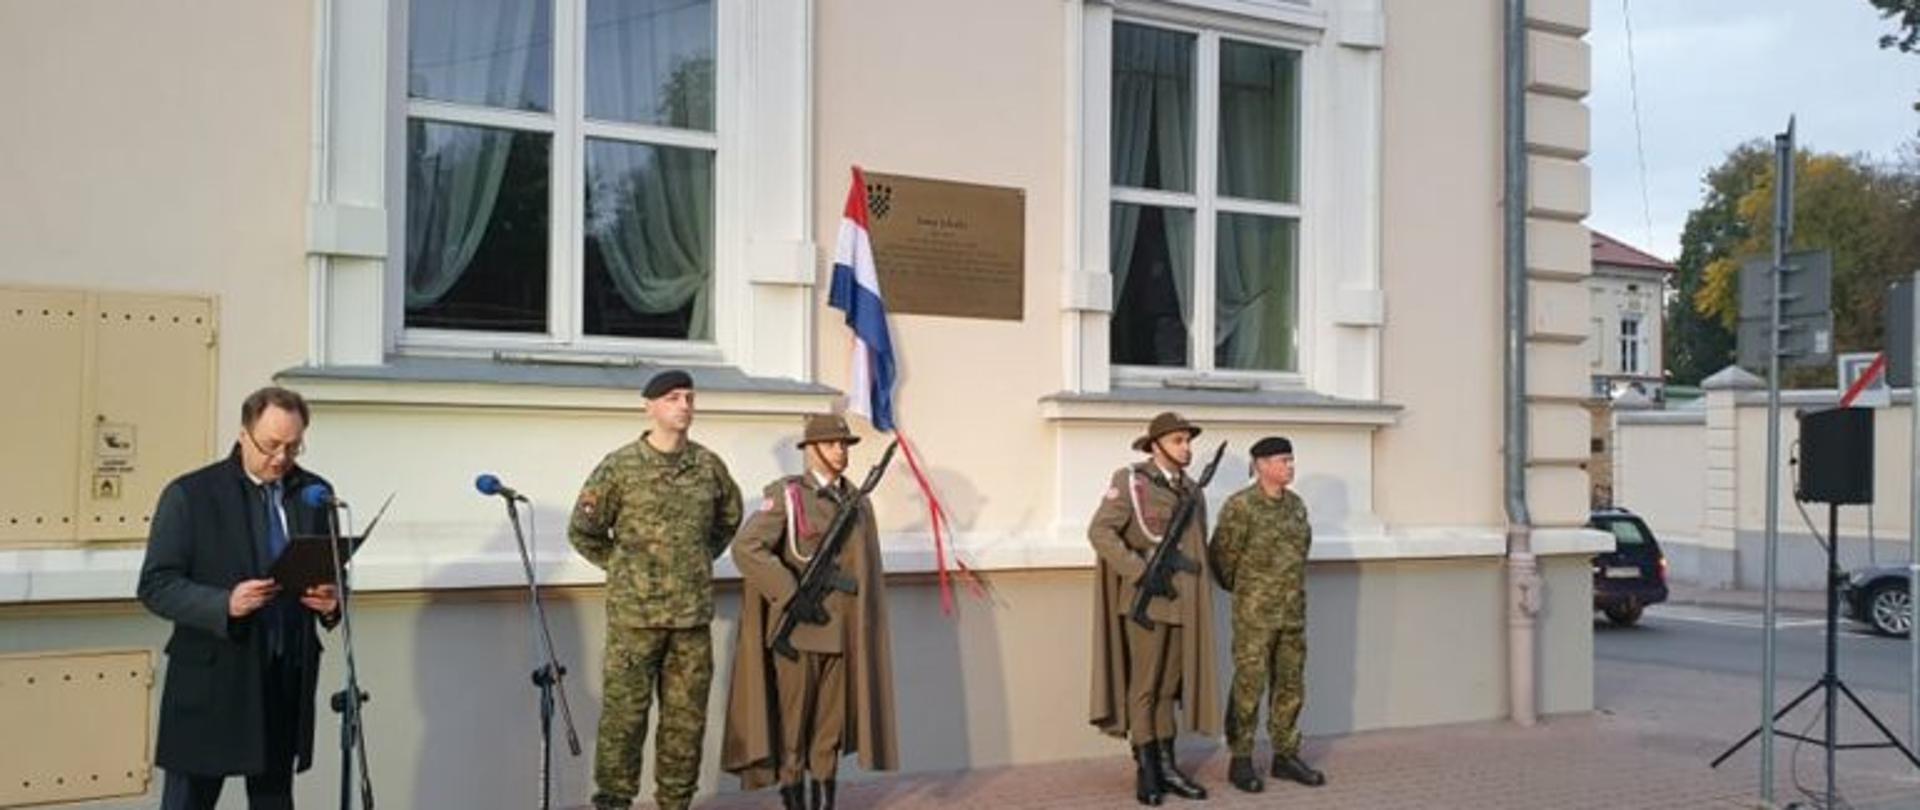 Odsłonięcie tablicy pamiątkowej poświęconej chorwackiemu banowi Josipowi Jelačiciowi 